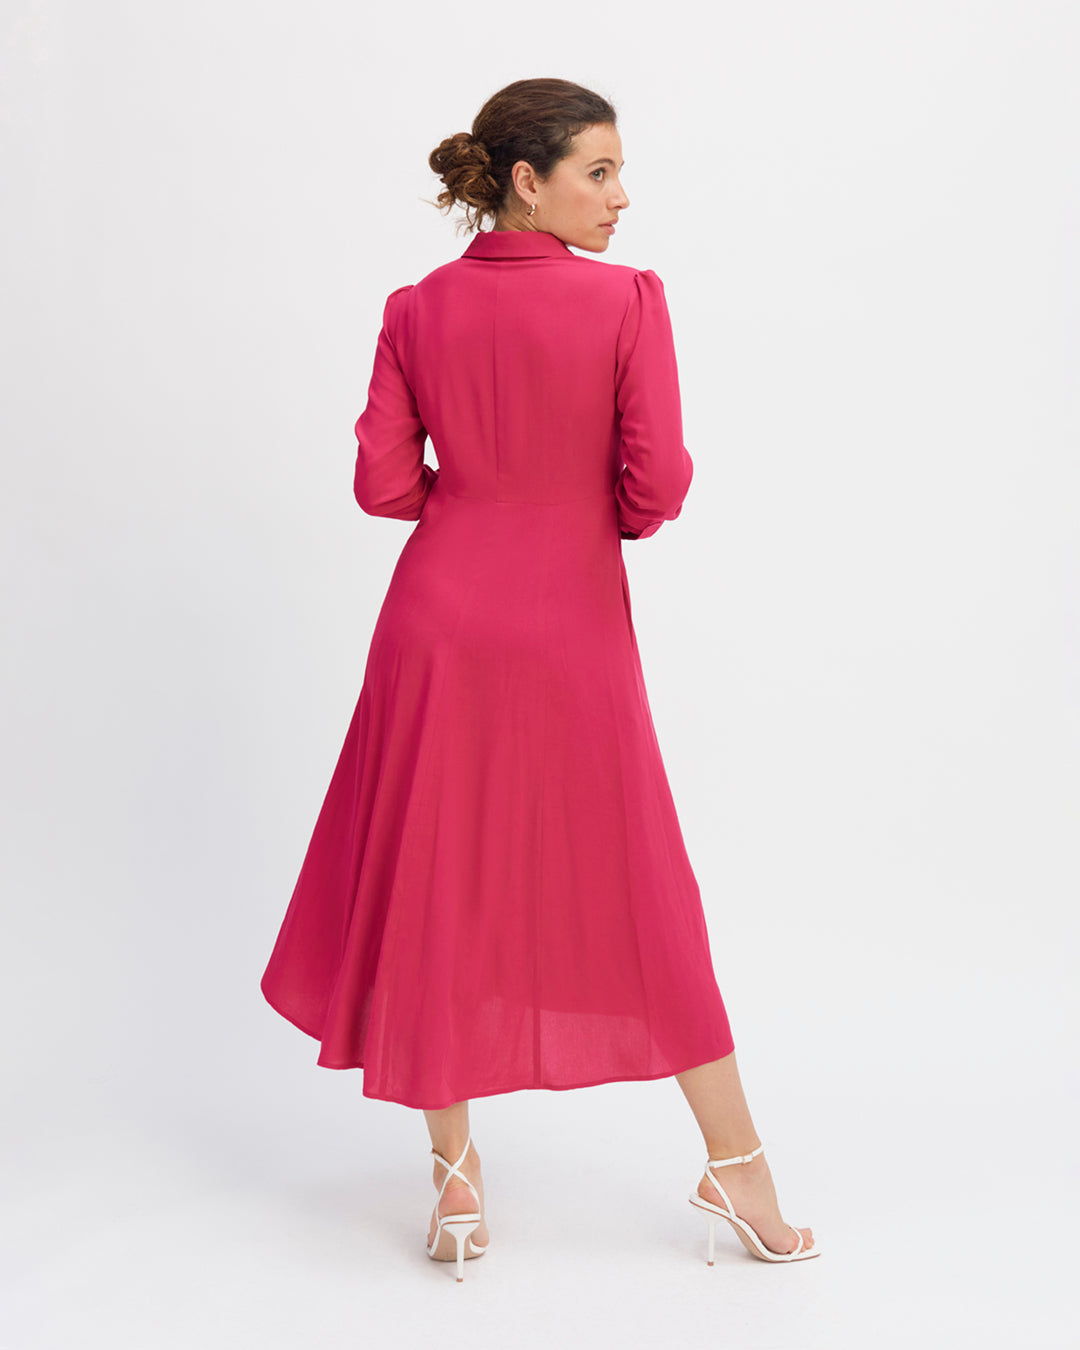 Robe-rose-Longueur-midi-Col-chemise-Manche-longues-avec-poignets-boutonnés-Patte-de-boutonnage-cachée-Cintrée-à-la-taille-17H10-tailleurs-pour-femme-paris-